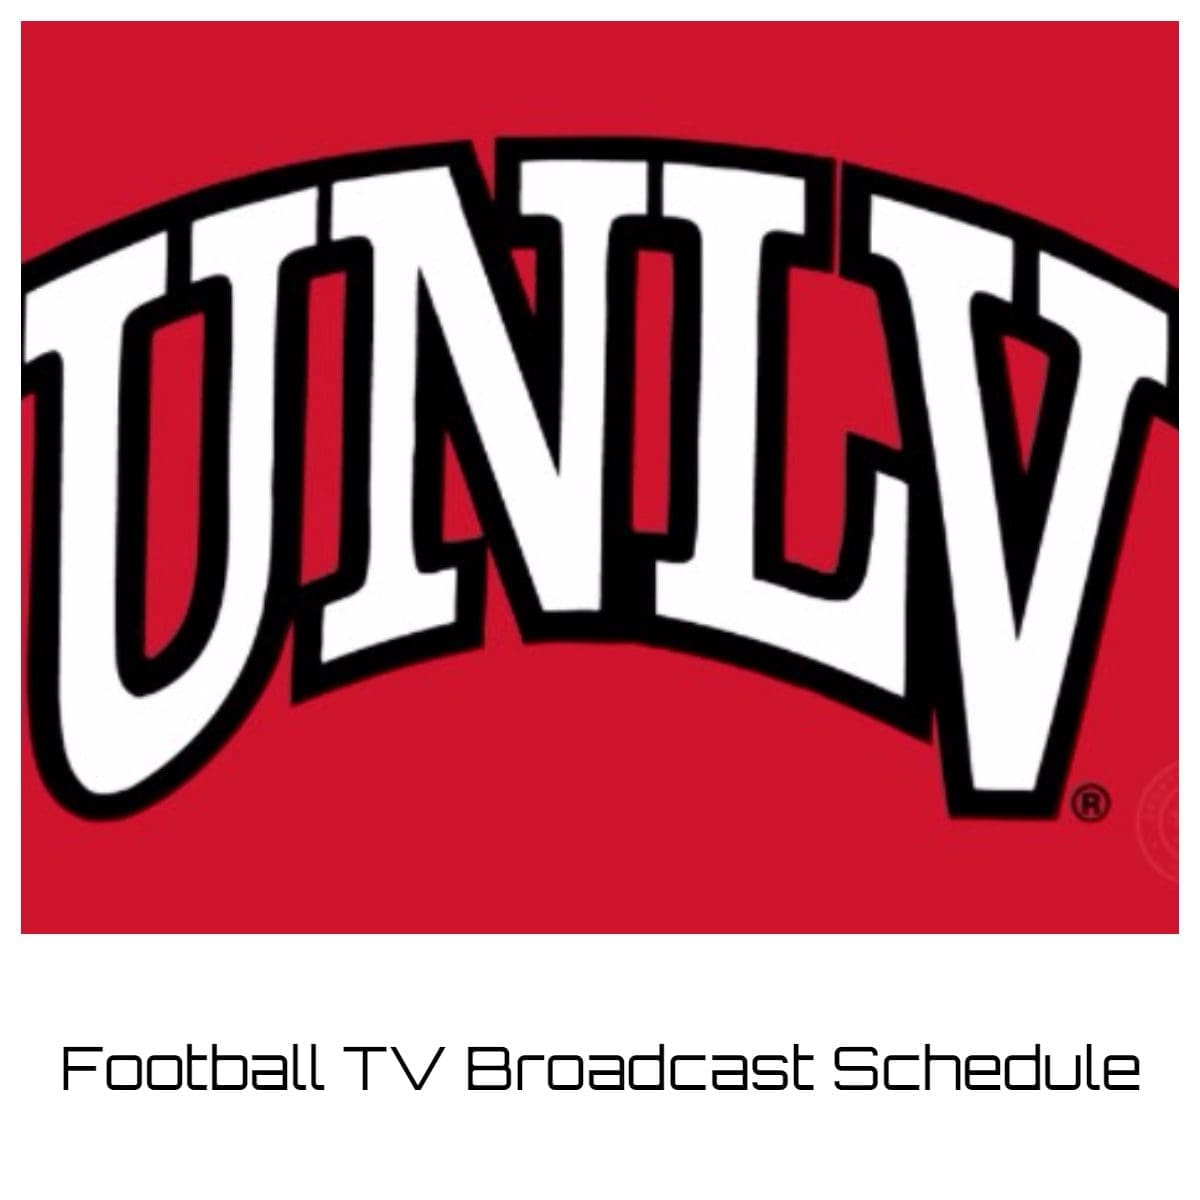 UNLV Runnin' Rebels Football TV Broadcast Schedule